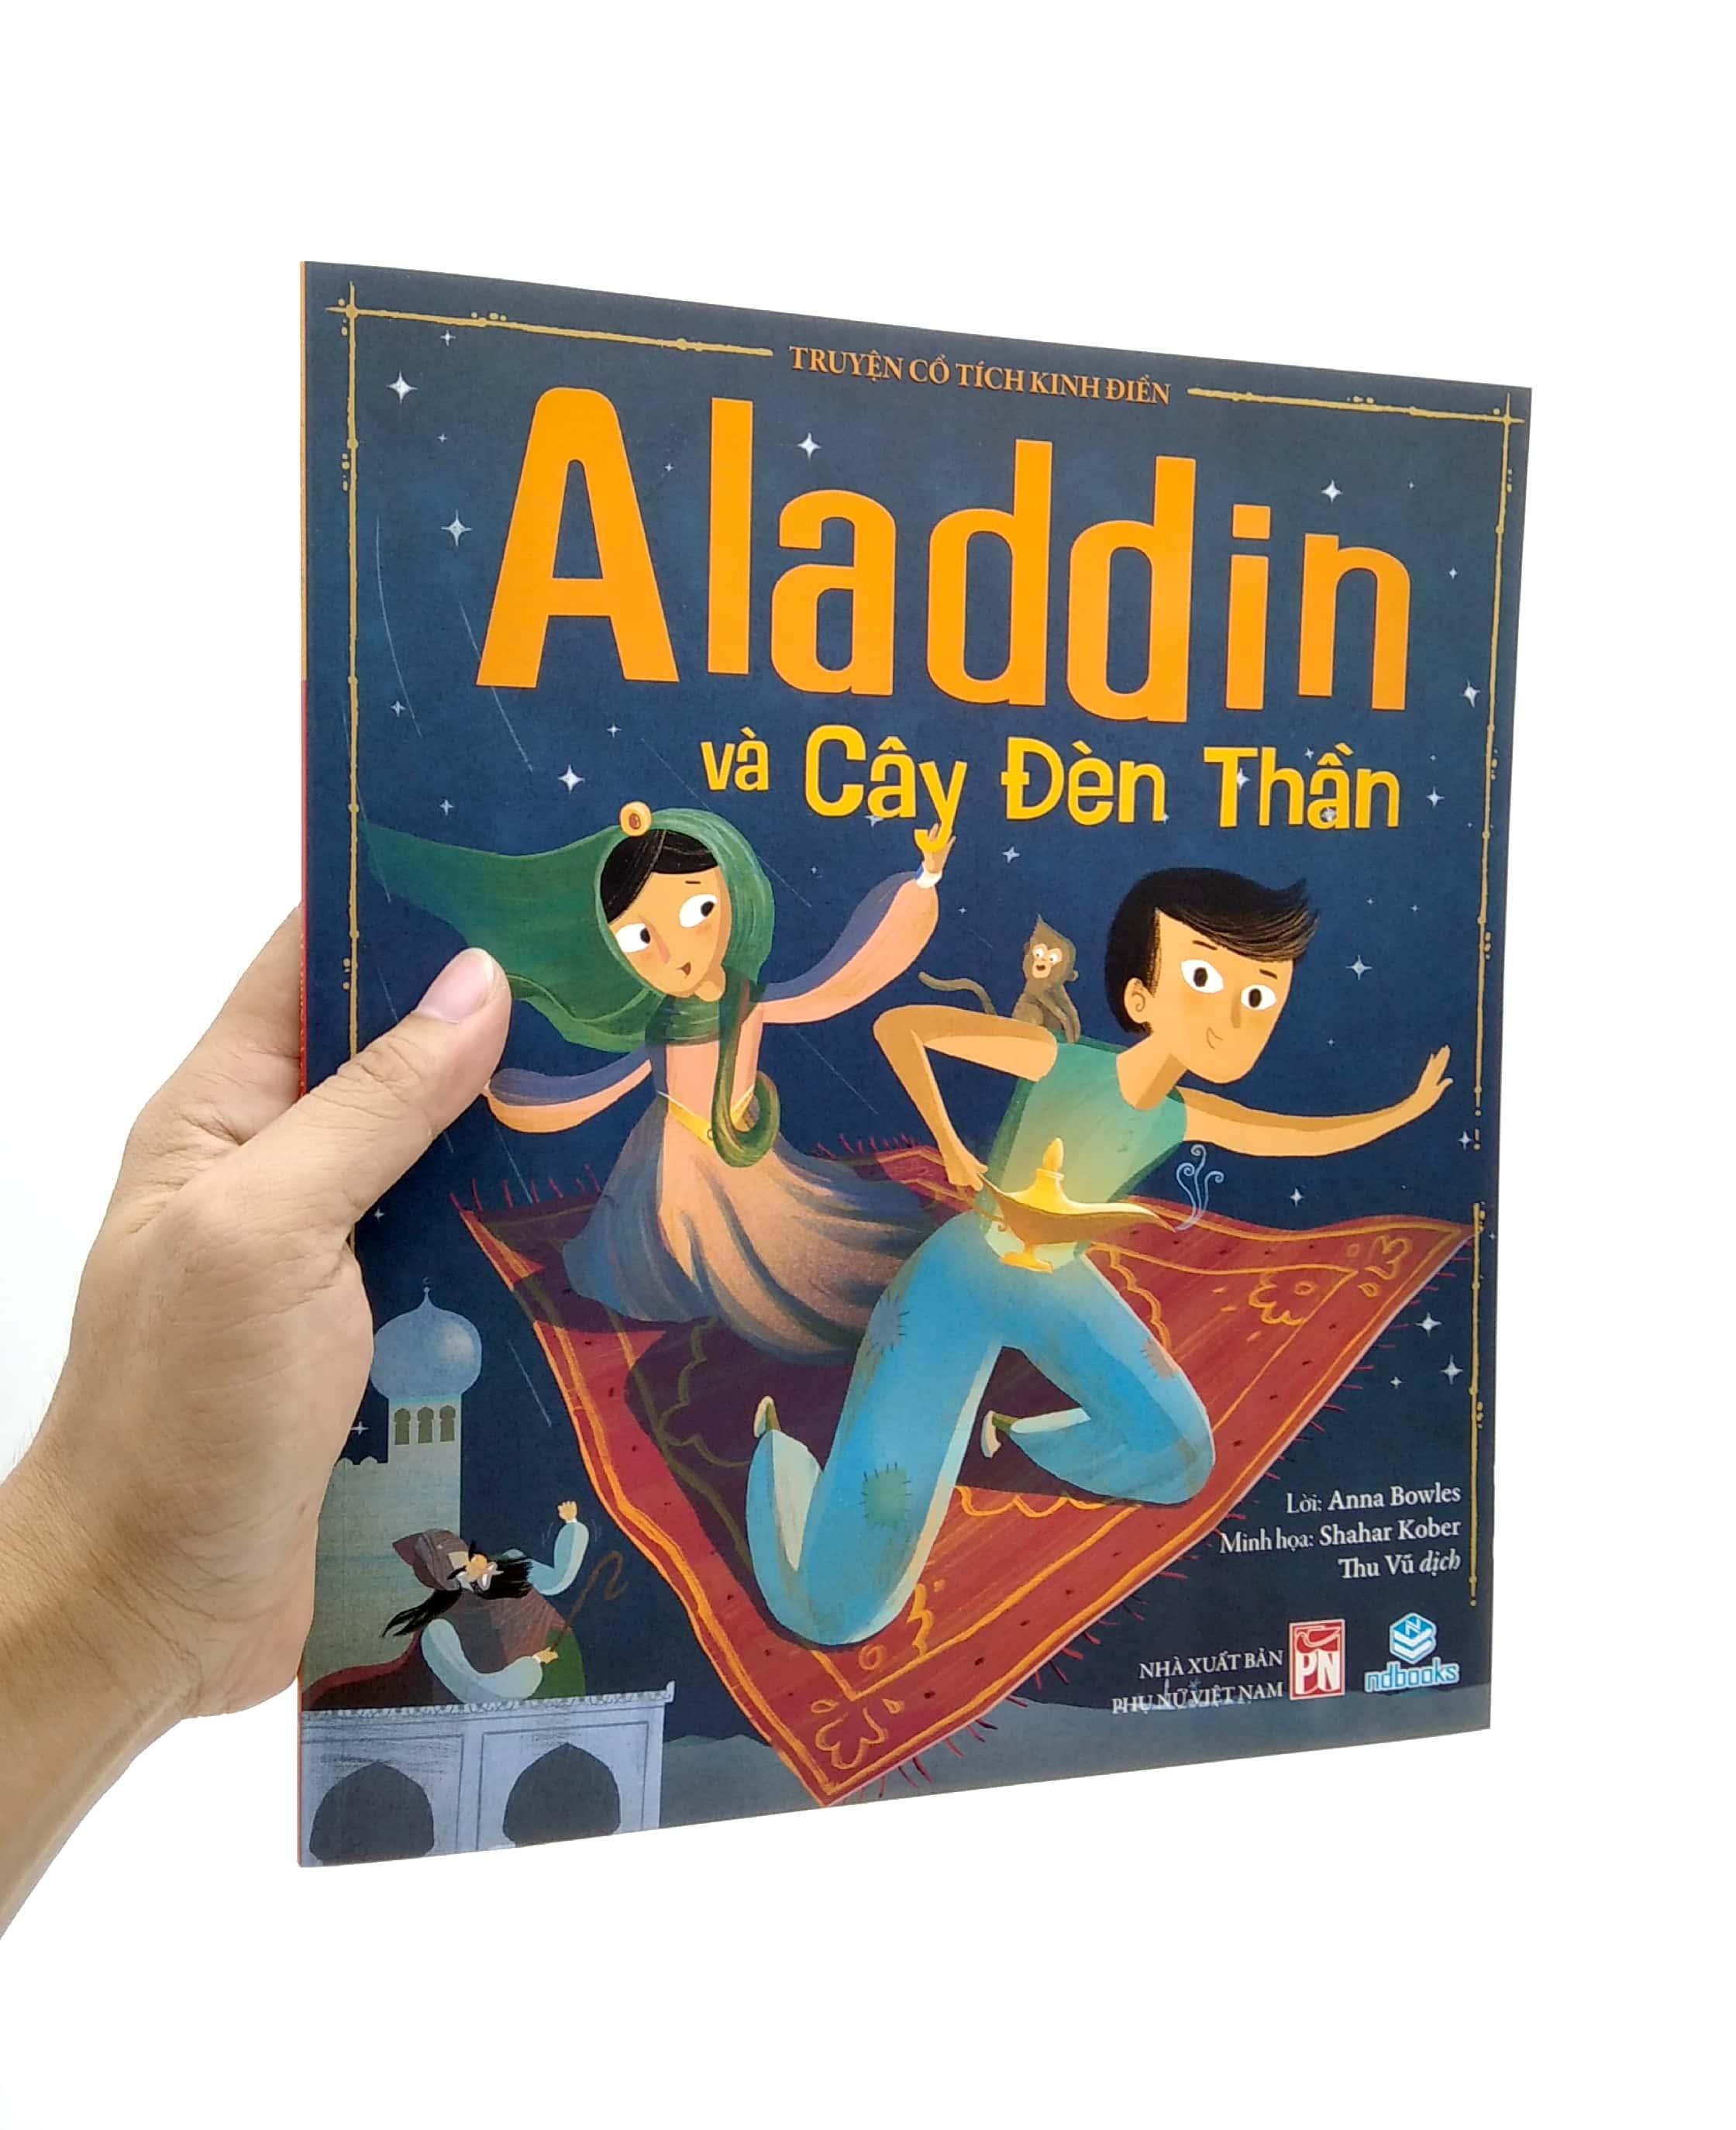 Truyện Cổ Tích Kinh Điển - Aladdin Và Cây Đèn Thần